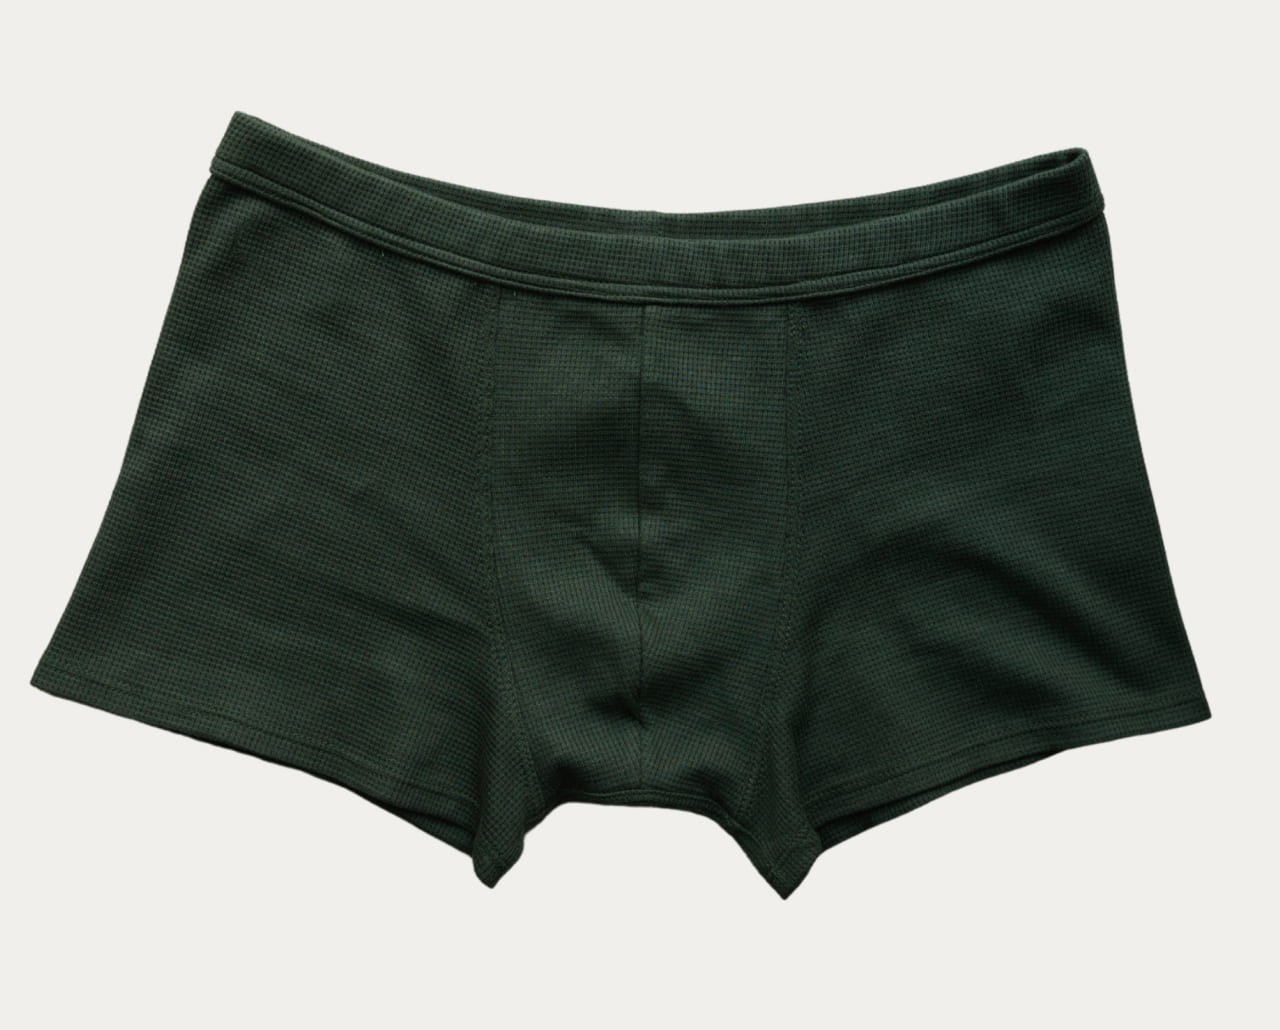 Tomboyx Boxer Briefs Green Jungle Cat Lightweight Underwear Mens Size 4X